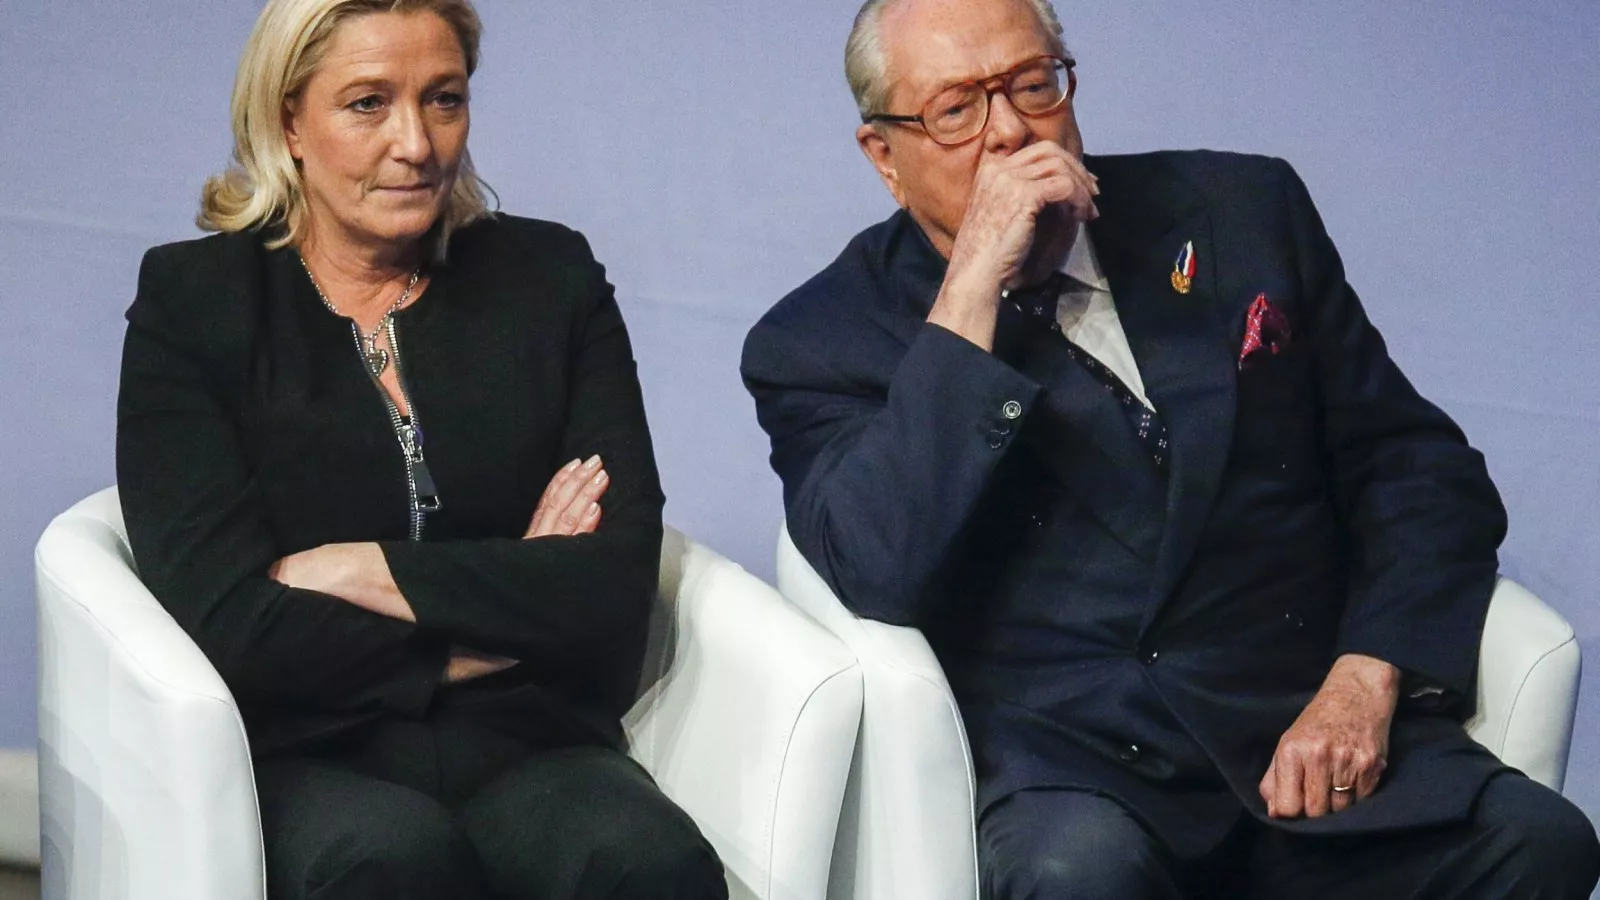 daar ben ik het mee eens sponsor academisch France's Jean-Marie Le Pen Steps Back to Ease Family Feud